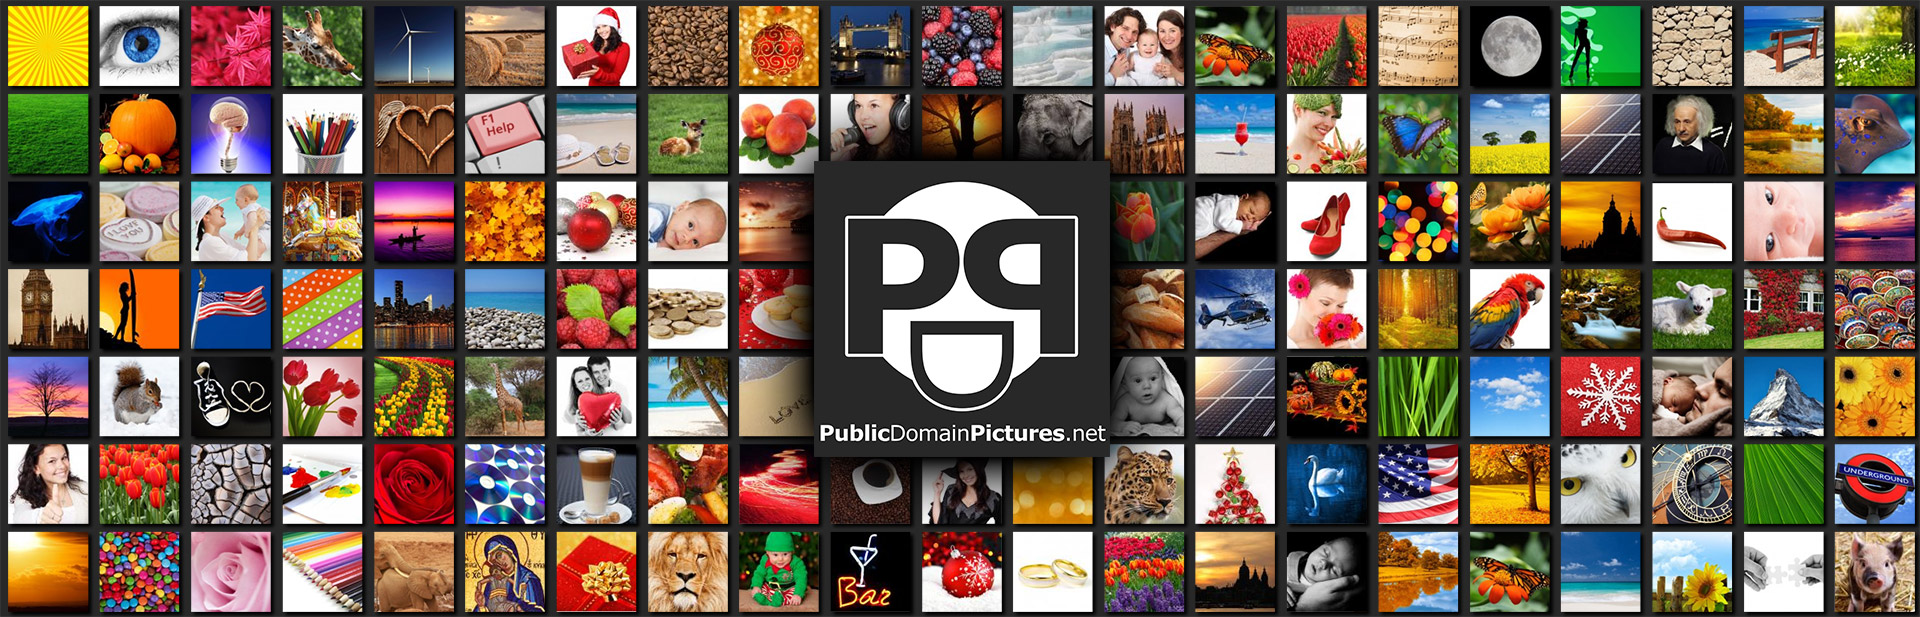 Public Domain Pictures Collage